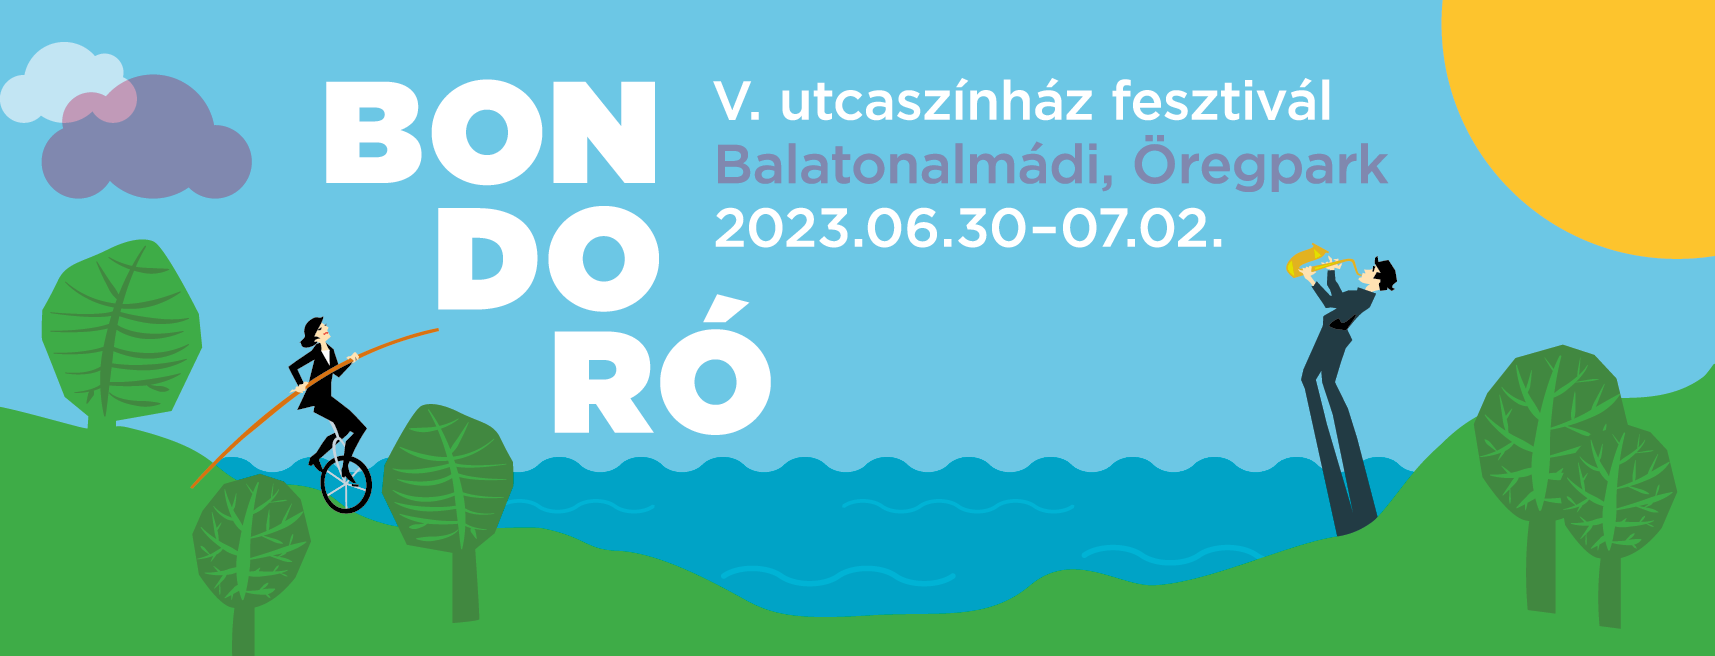 Bondoró Fesztivál 2023